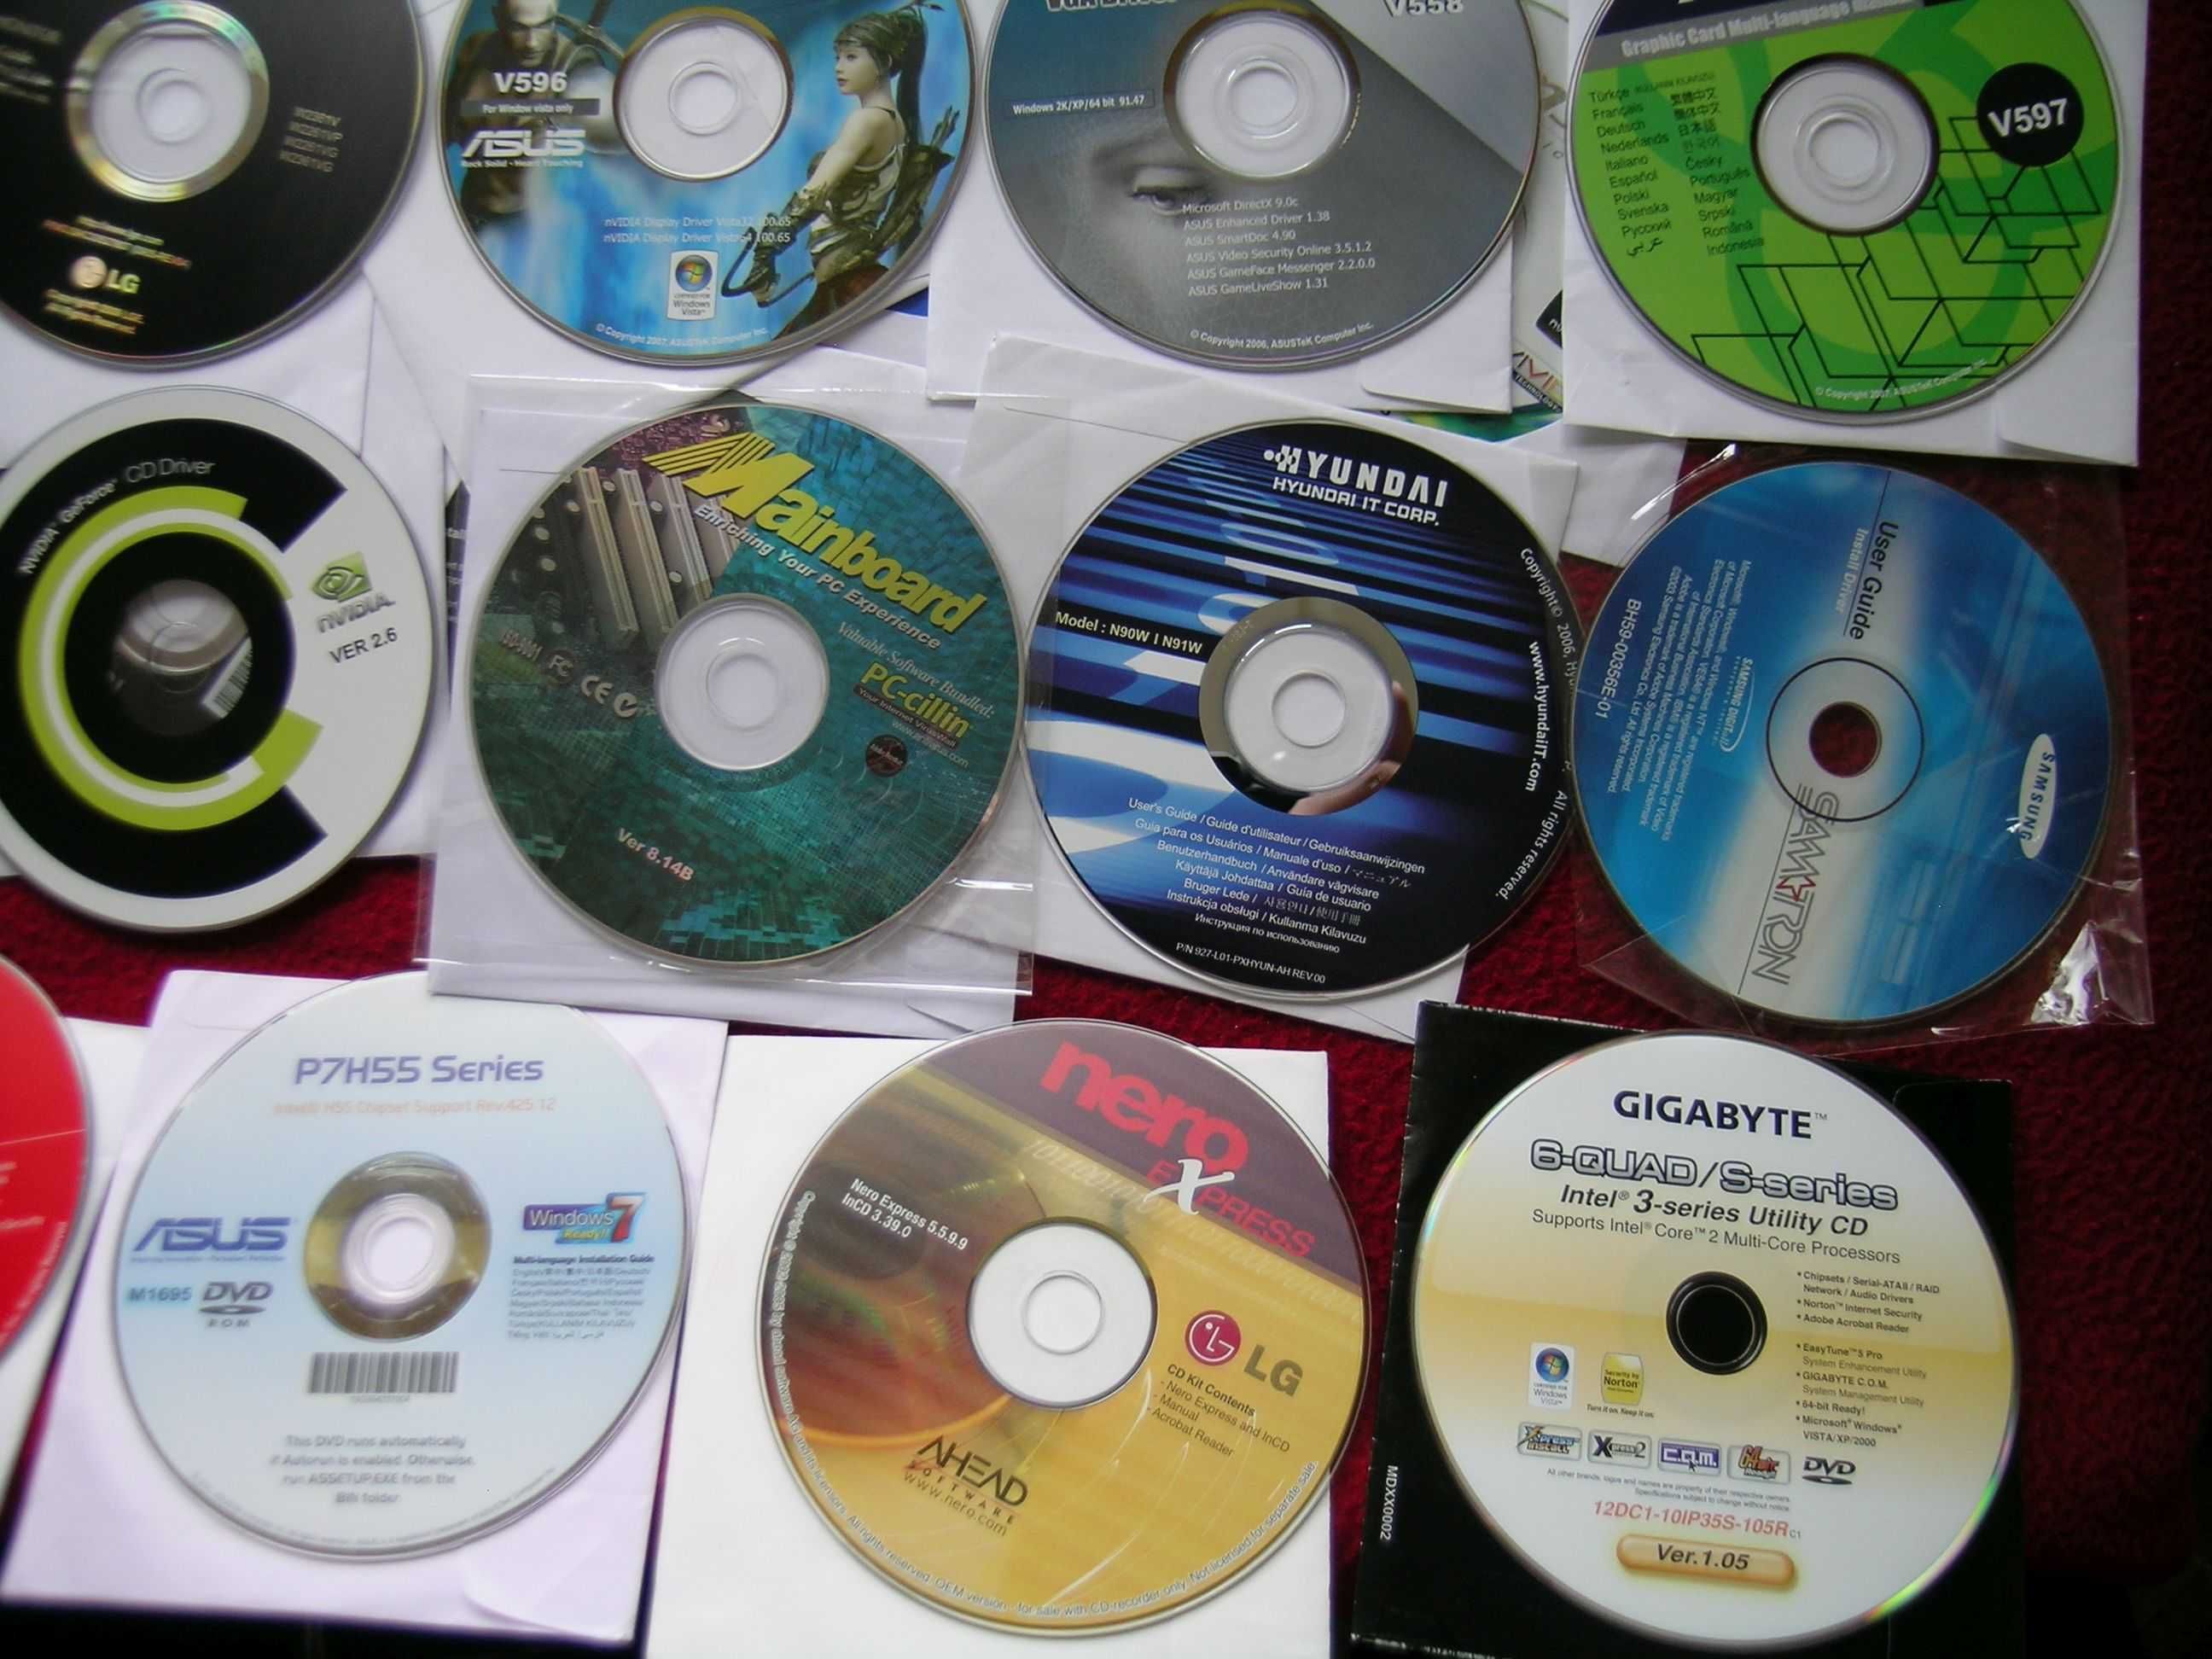 Sterowniki na płytach CD